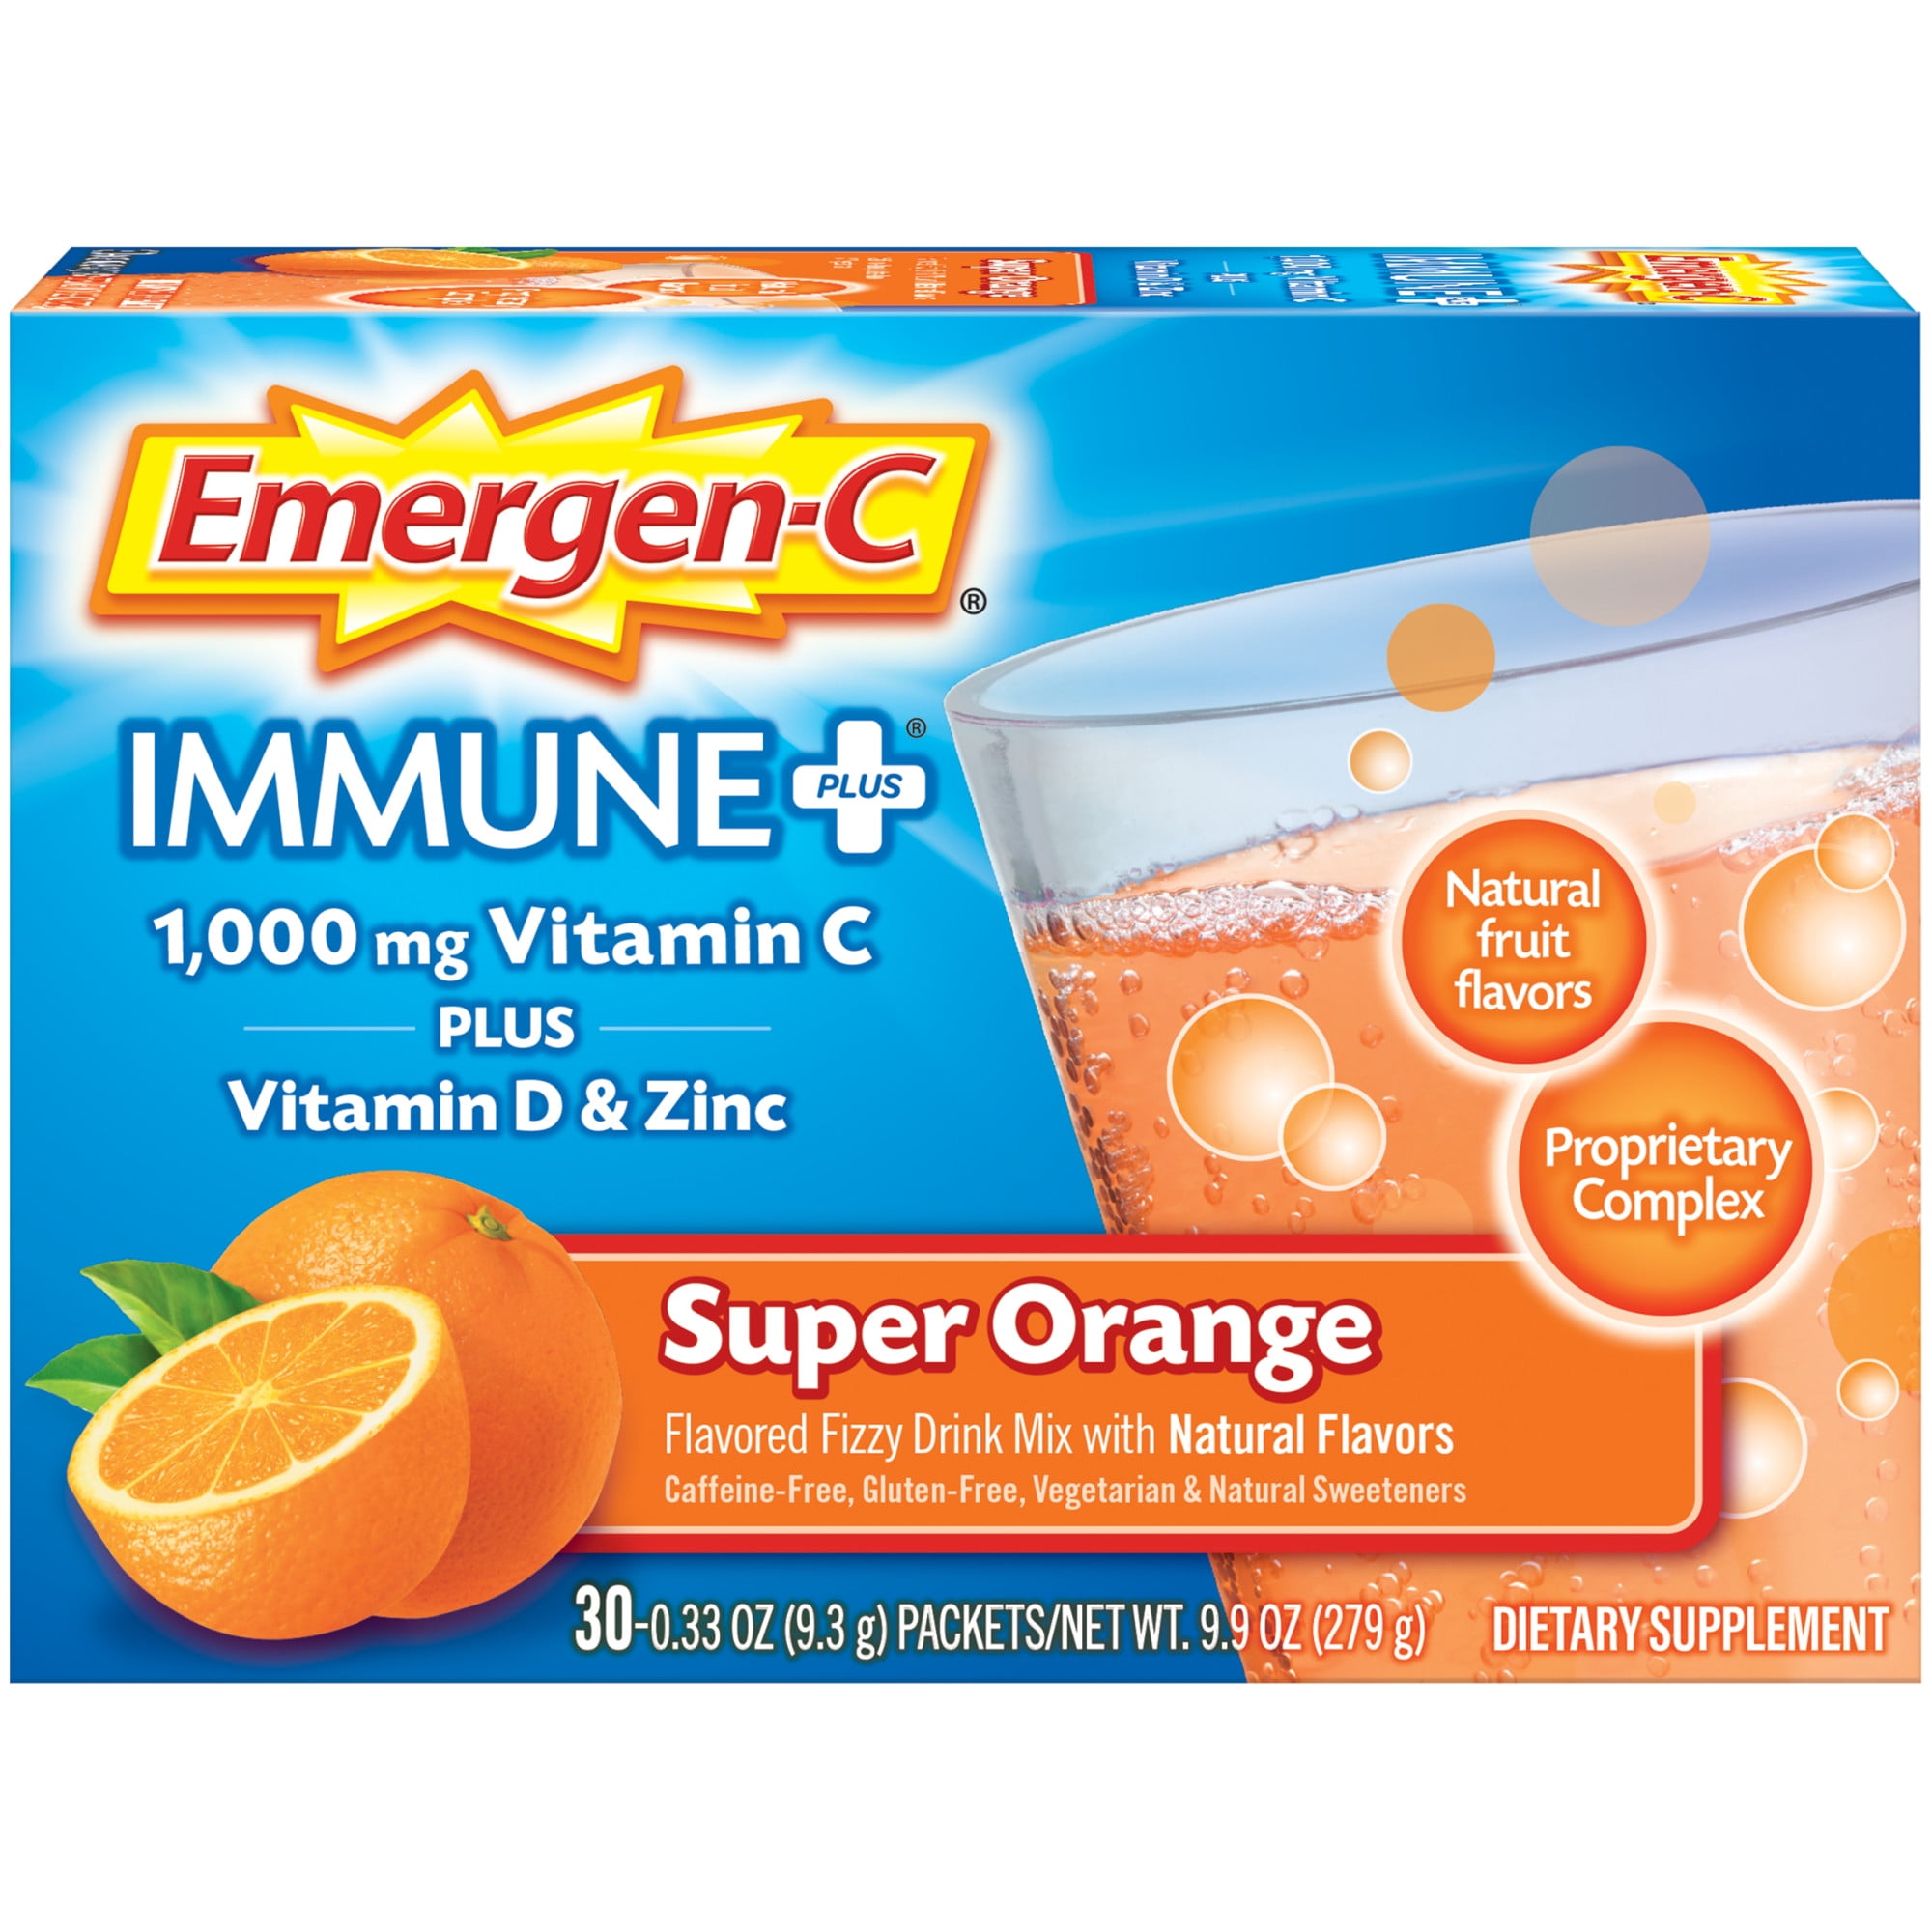 Emergen-C Immune Plus Vitamin C Supplement for Immune Support, Super Orange, 30 Ct